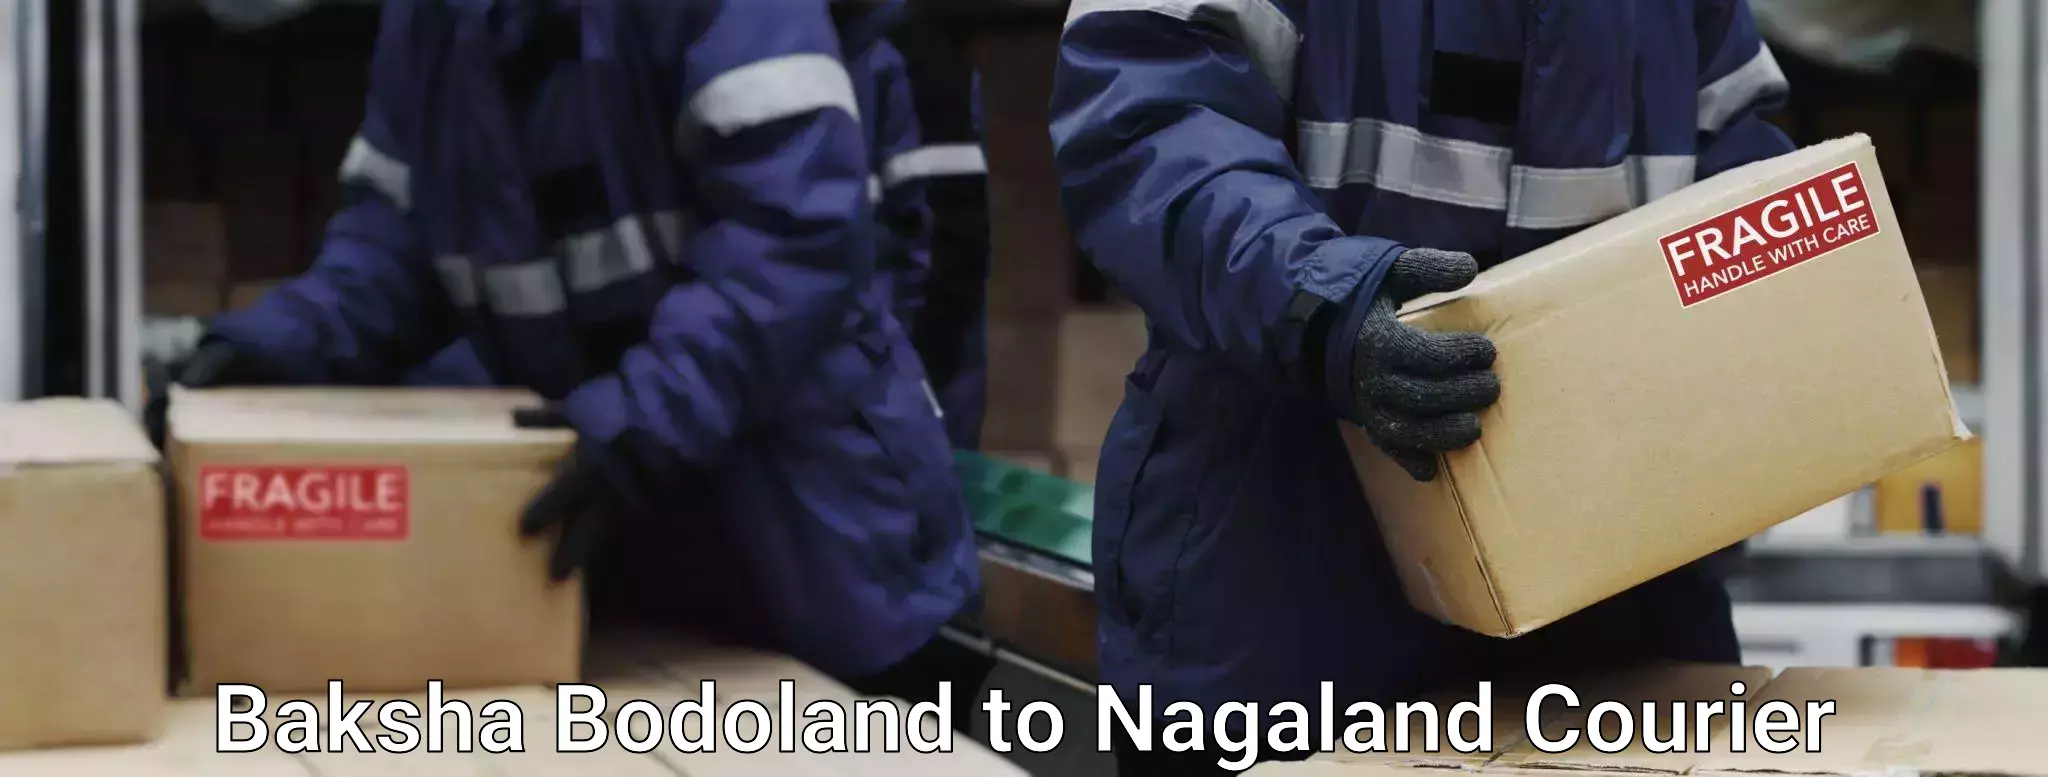 Luggage shipping rates Baksha Bodoland to Nagaland